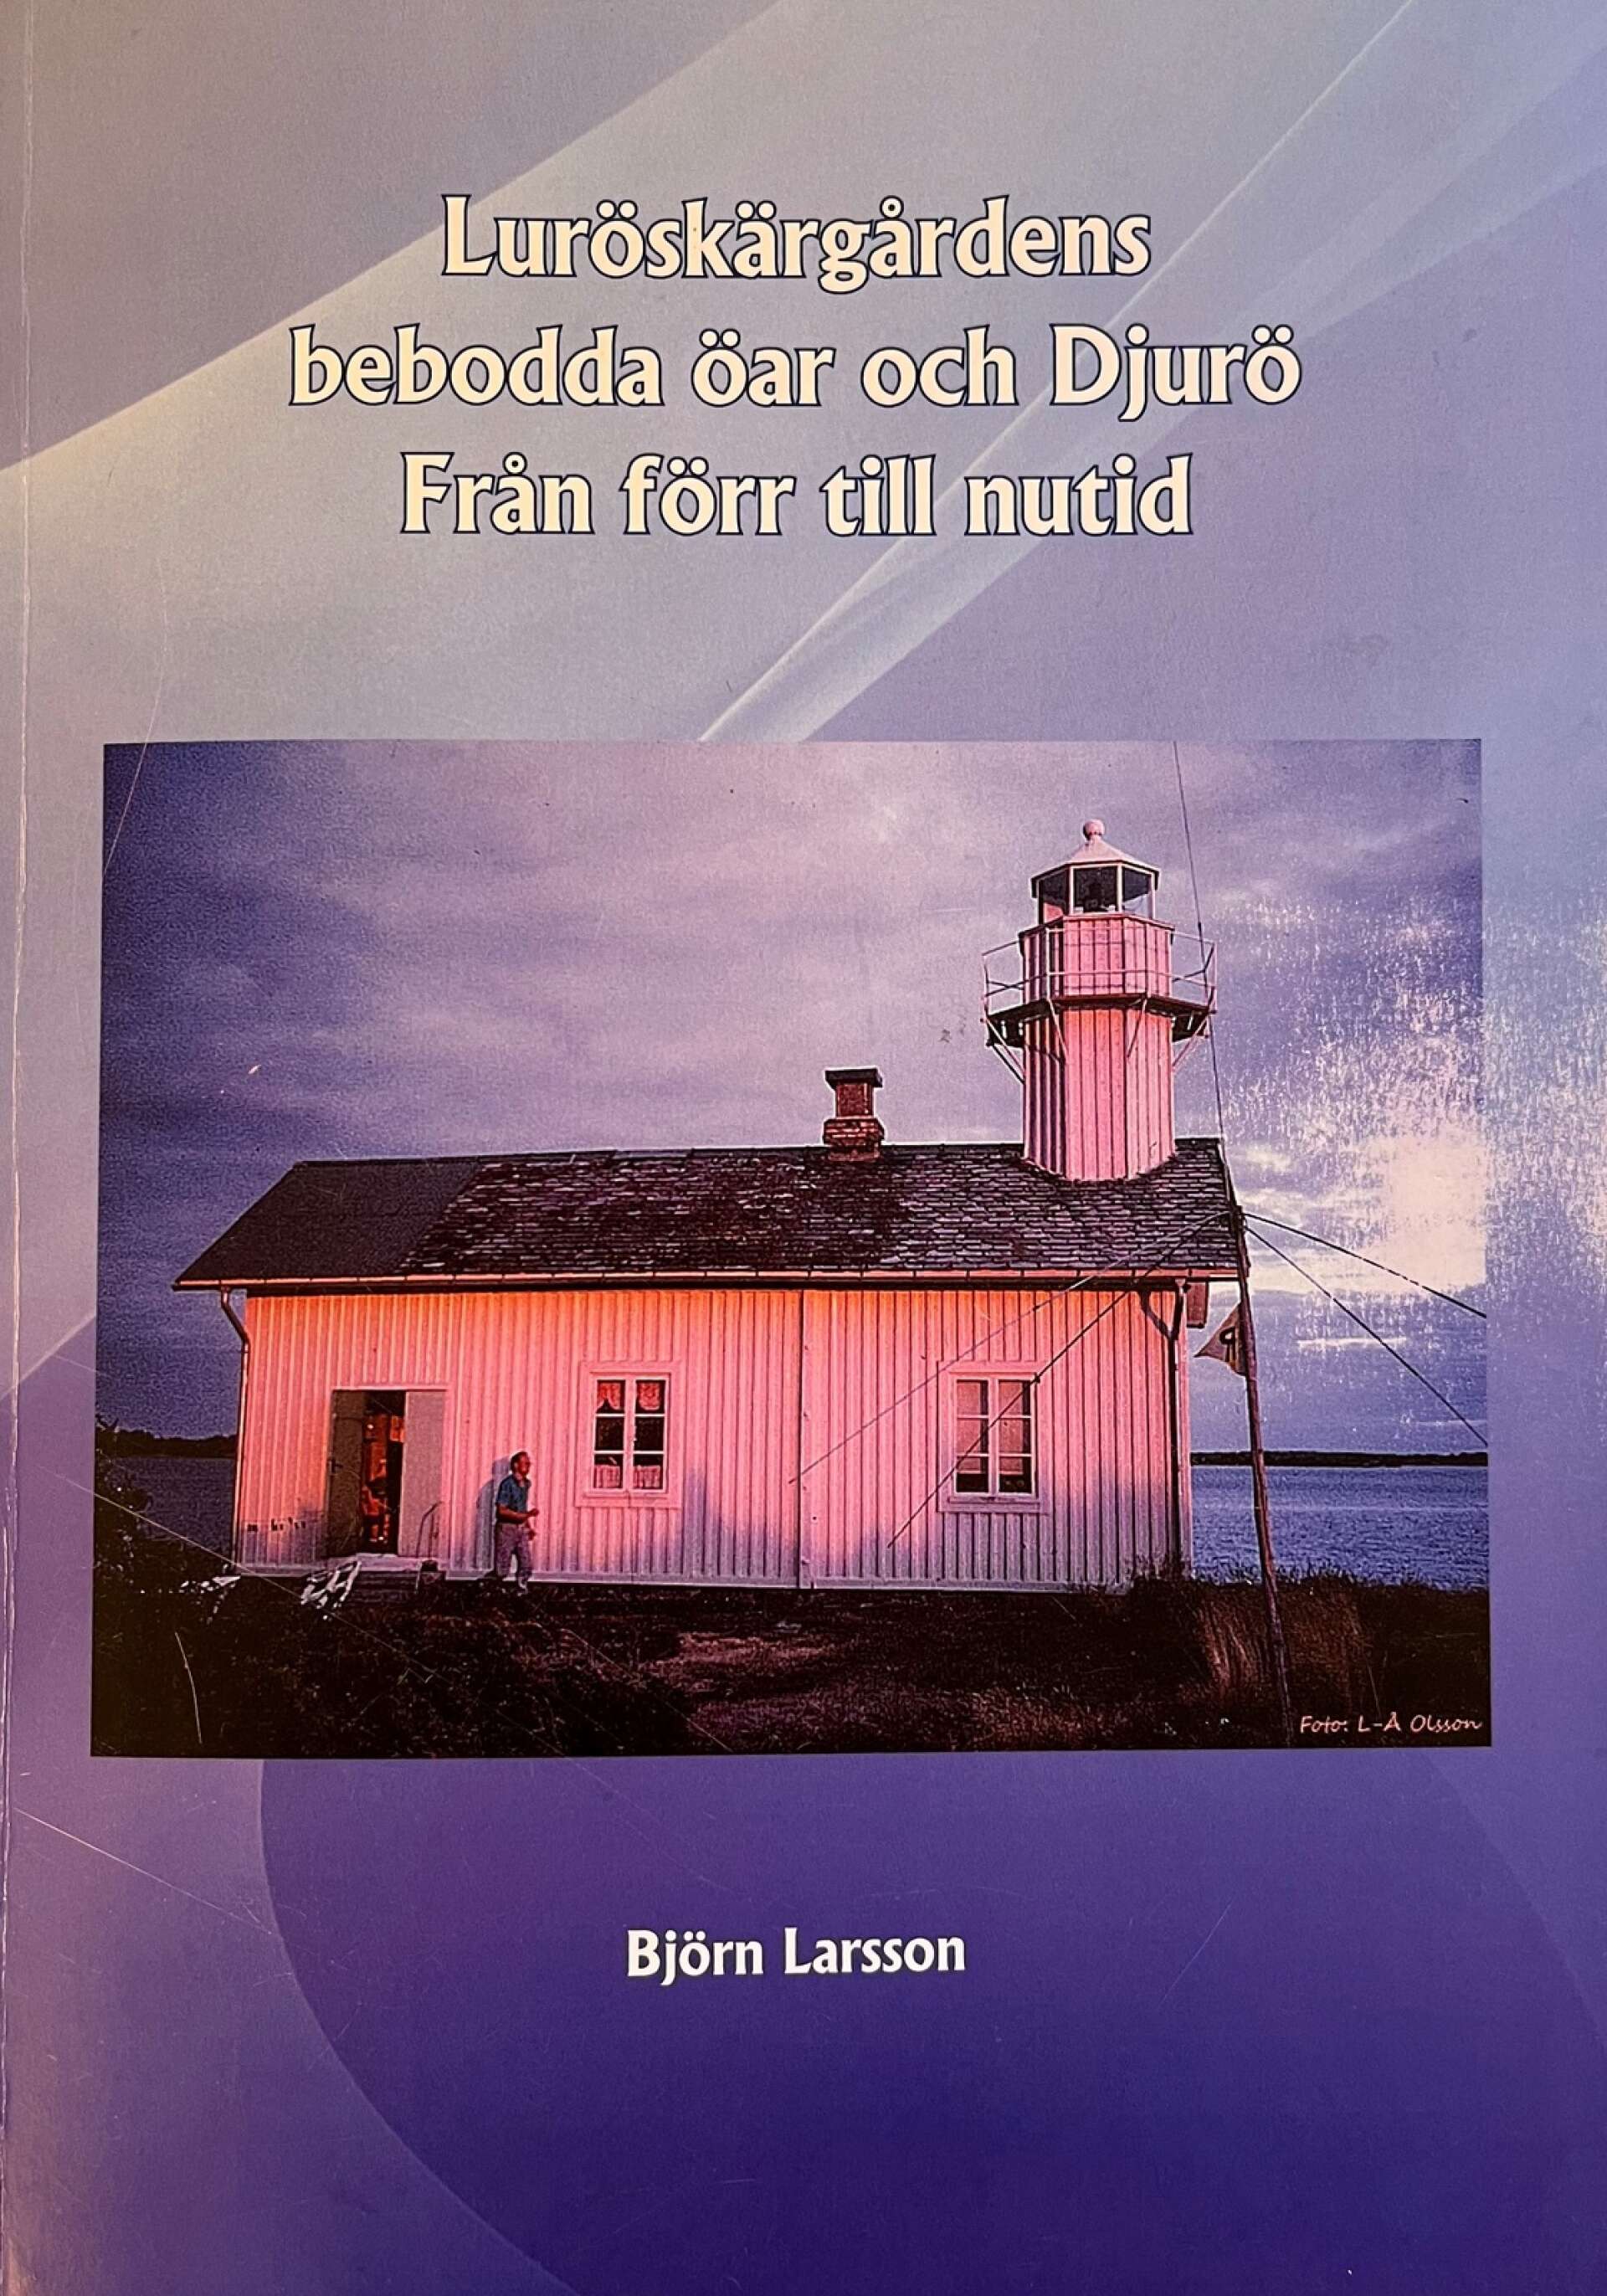 Björn Larsson har skrivit boken Luröskärgårdens bebodda öar och Djurö - Från förr till nutid.